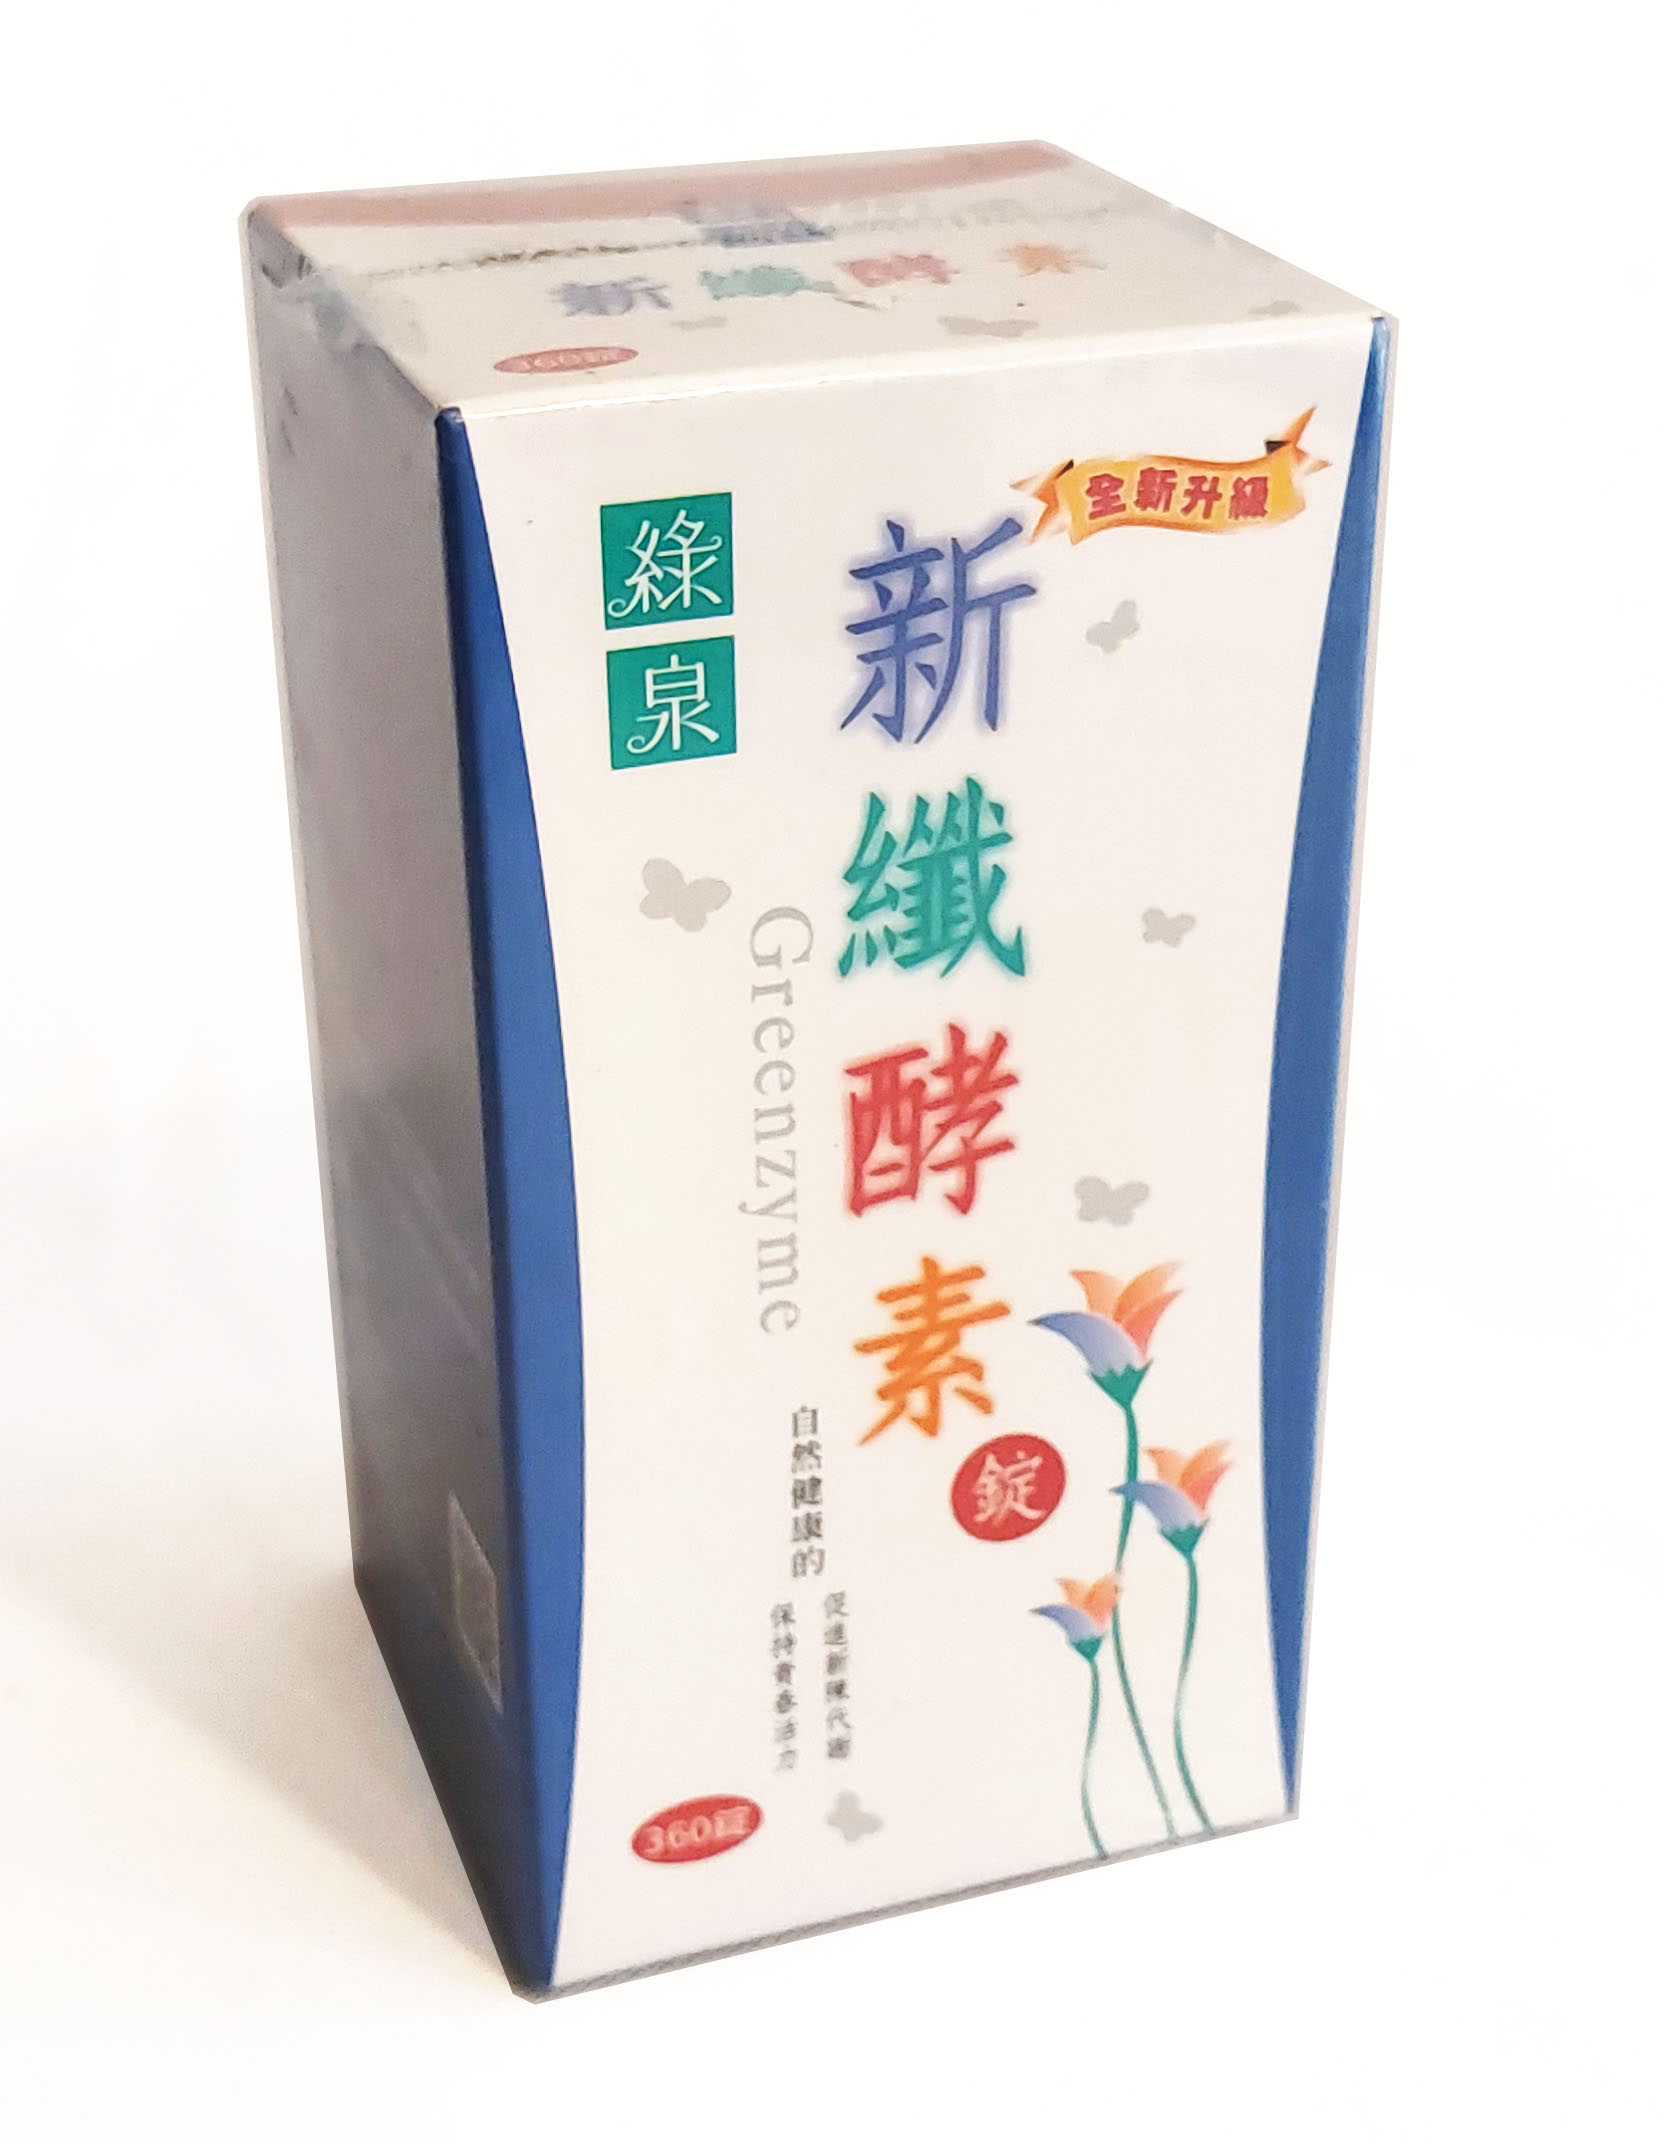 綠泉 新纖酵素 0.3克*360錠/罐 (產地台灣)